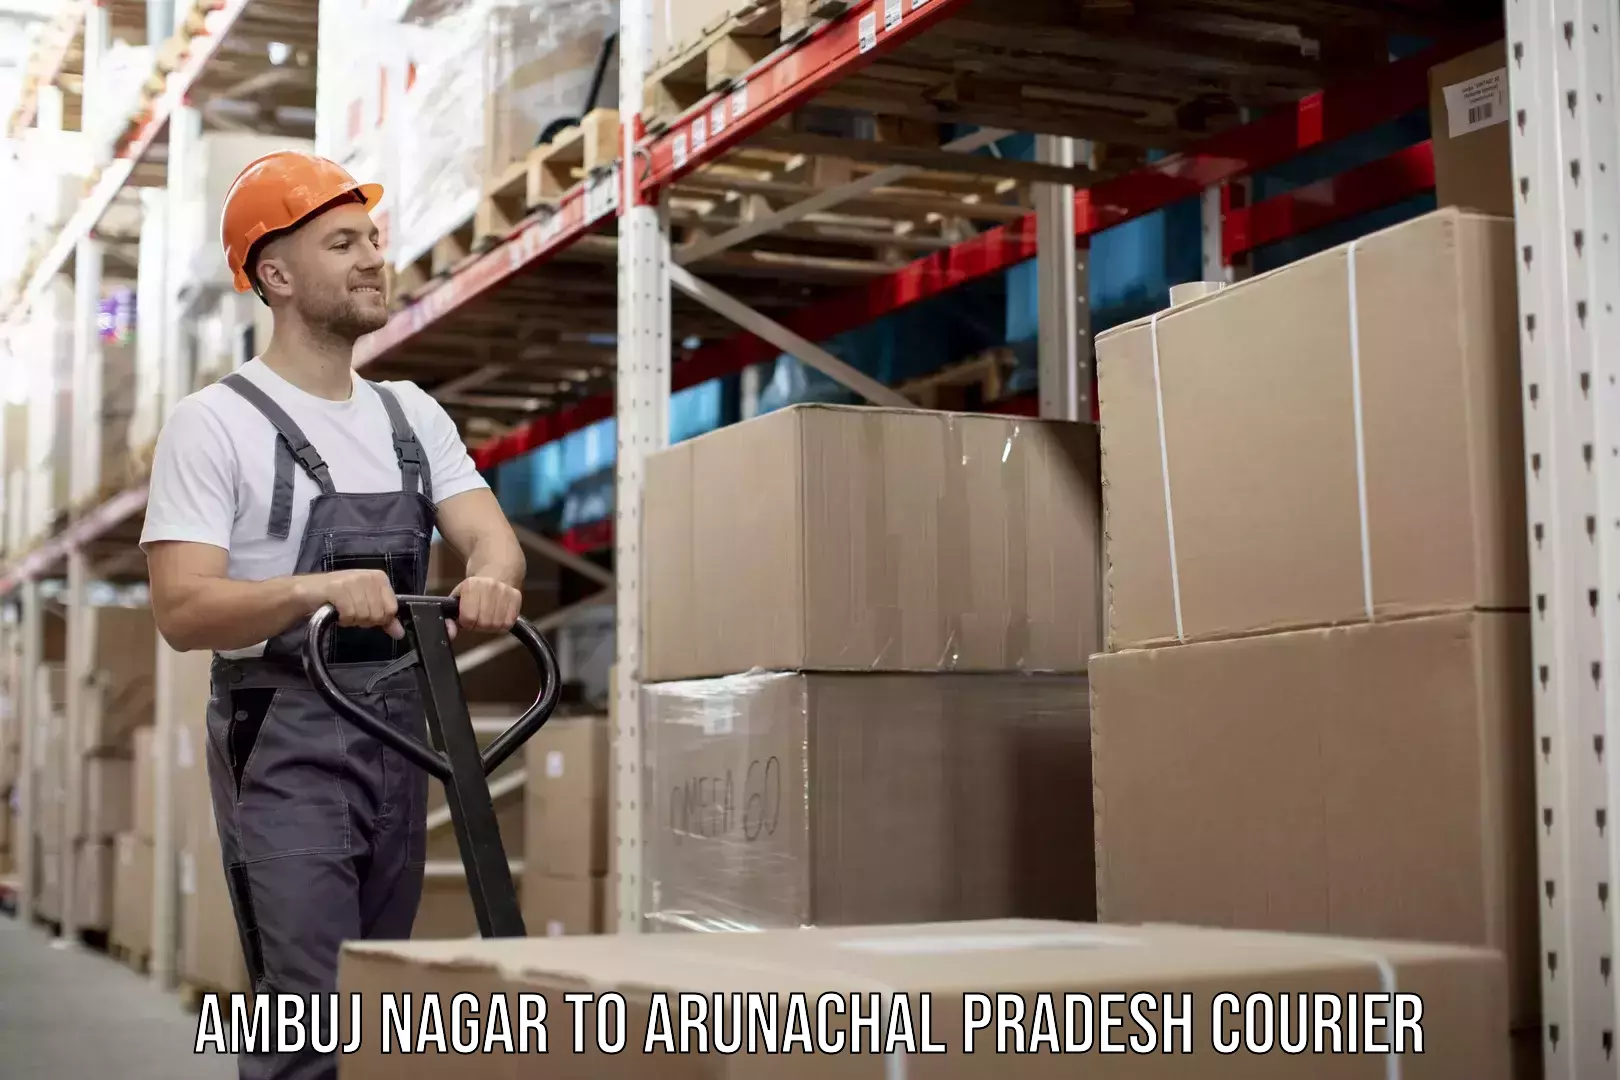 Urban courier service Ambuj Nagar to Arunachal Pradesh